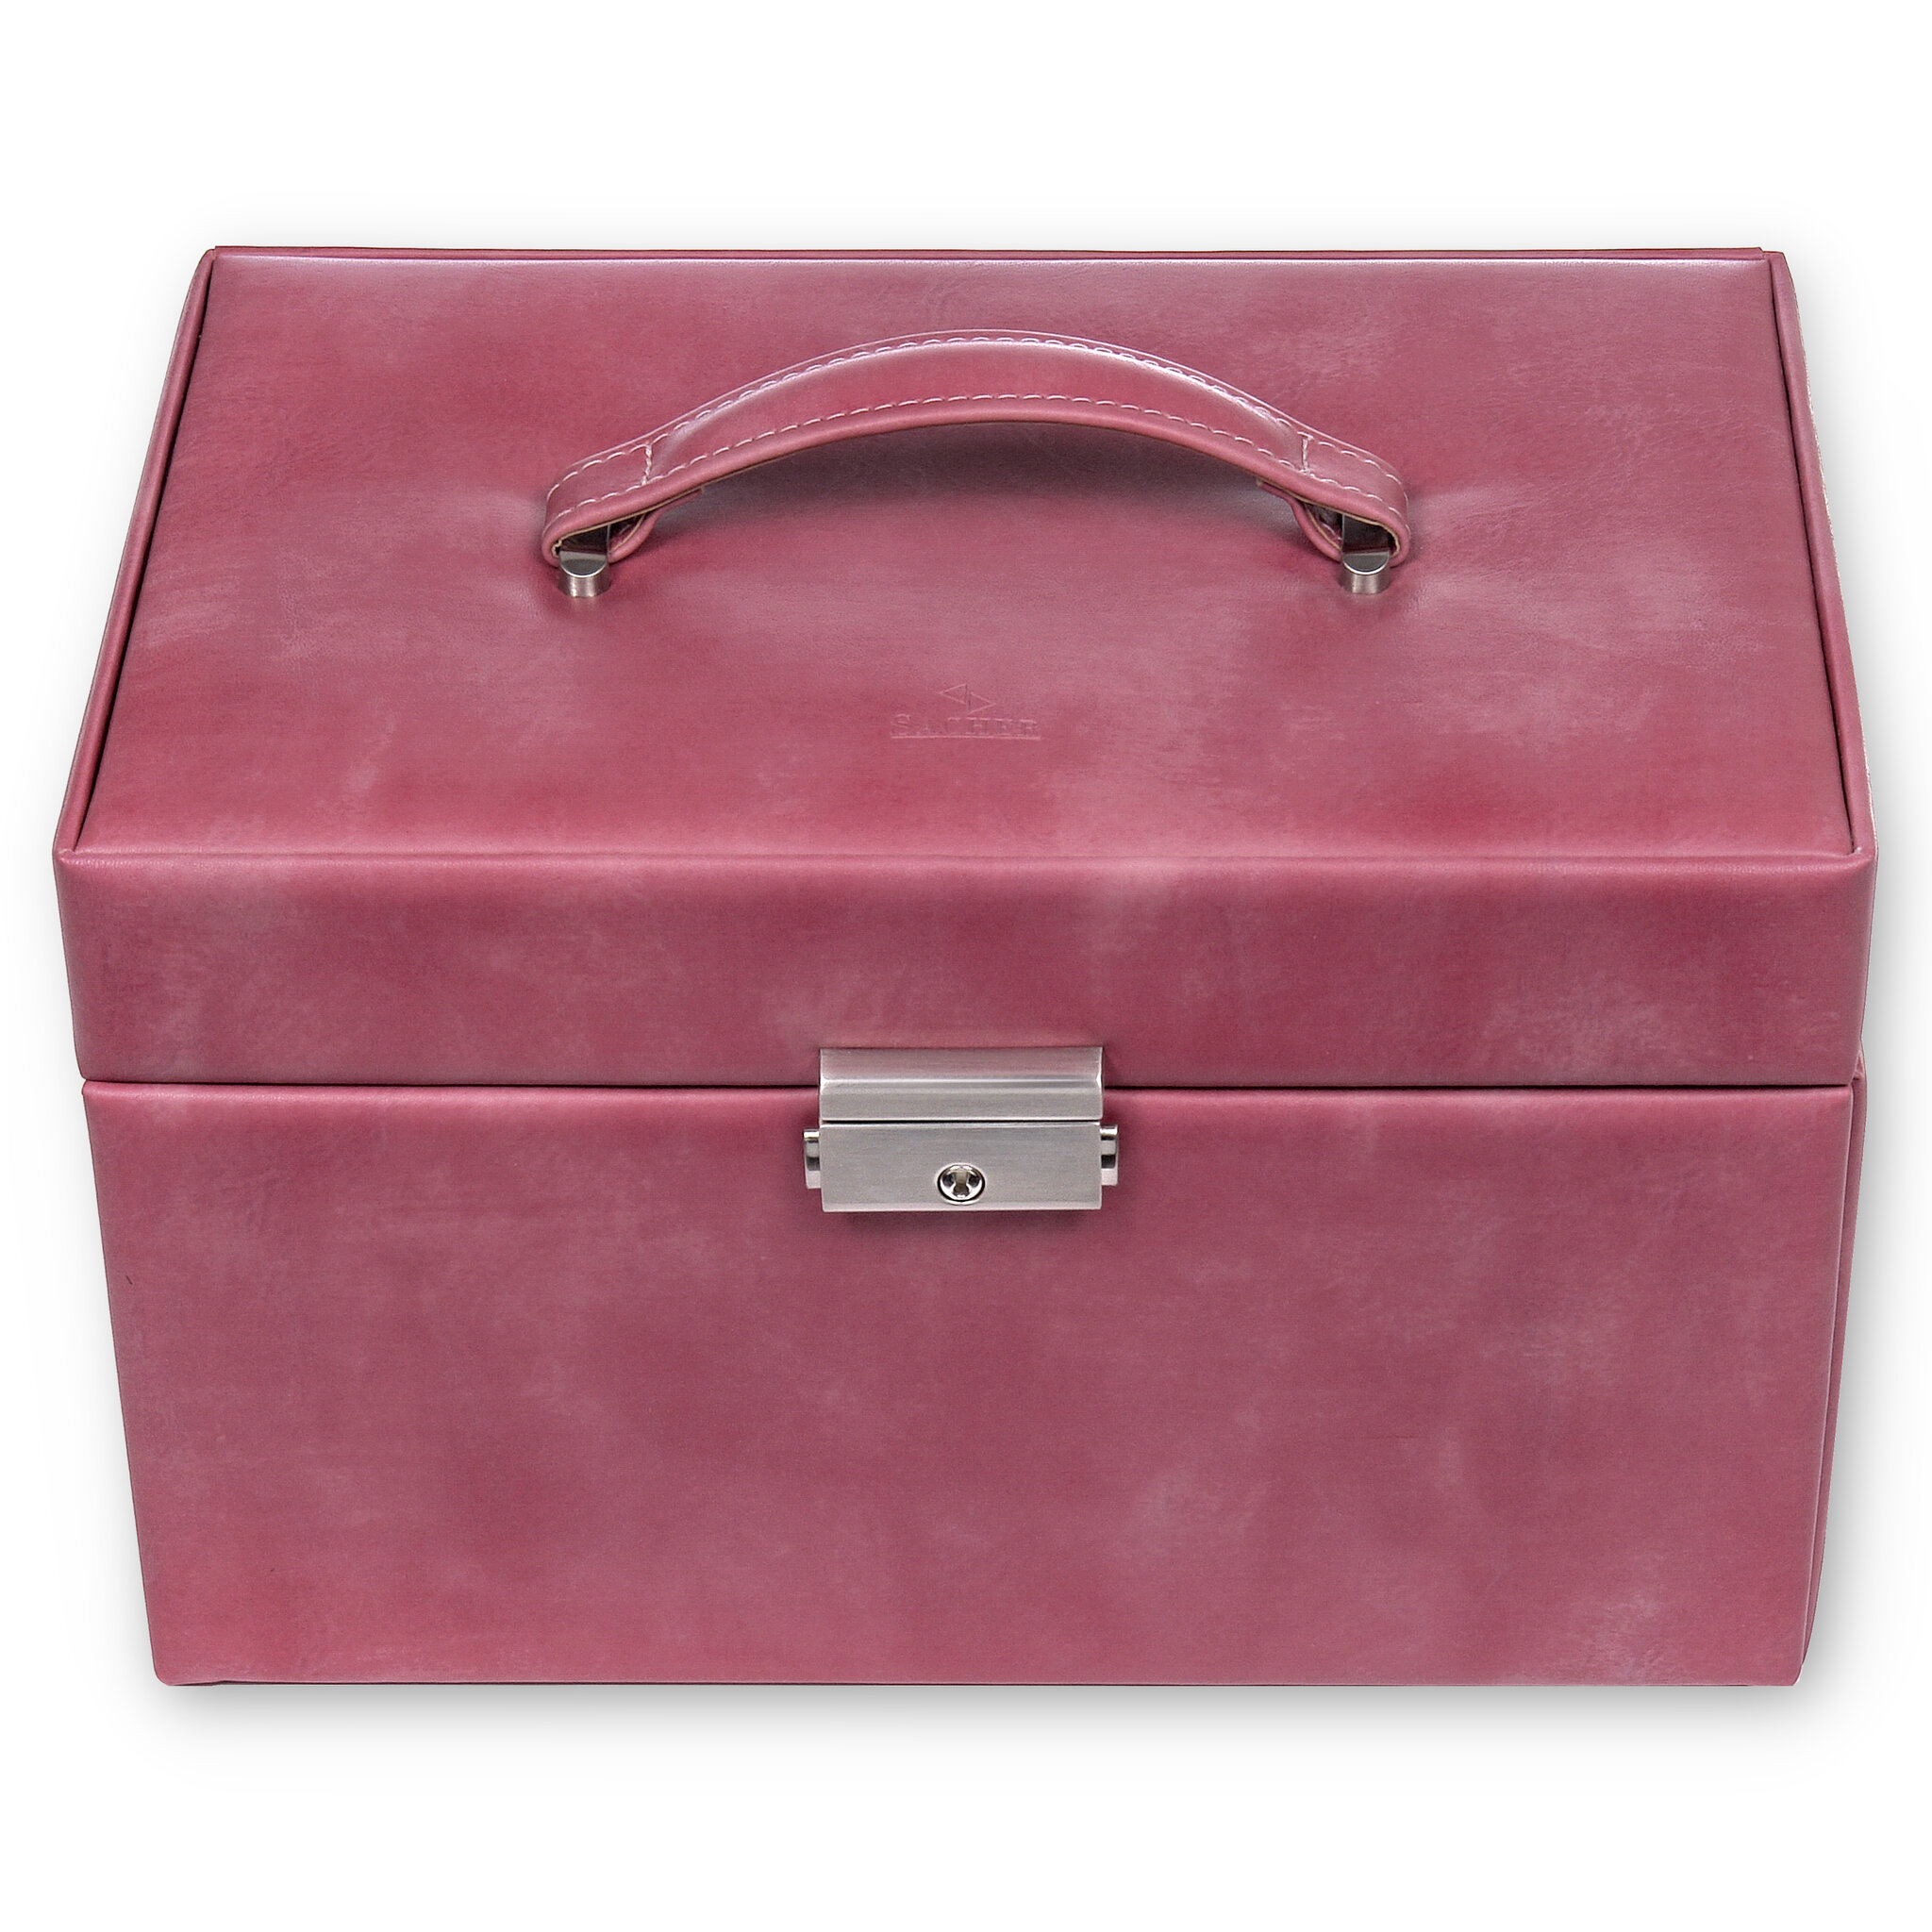 Jewellery box Jasmin pastello / old rosé